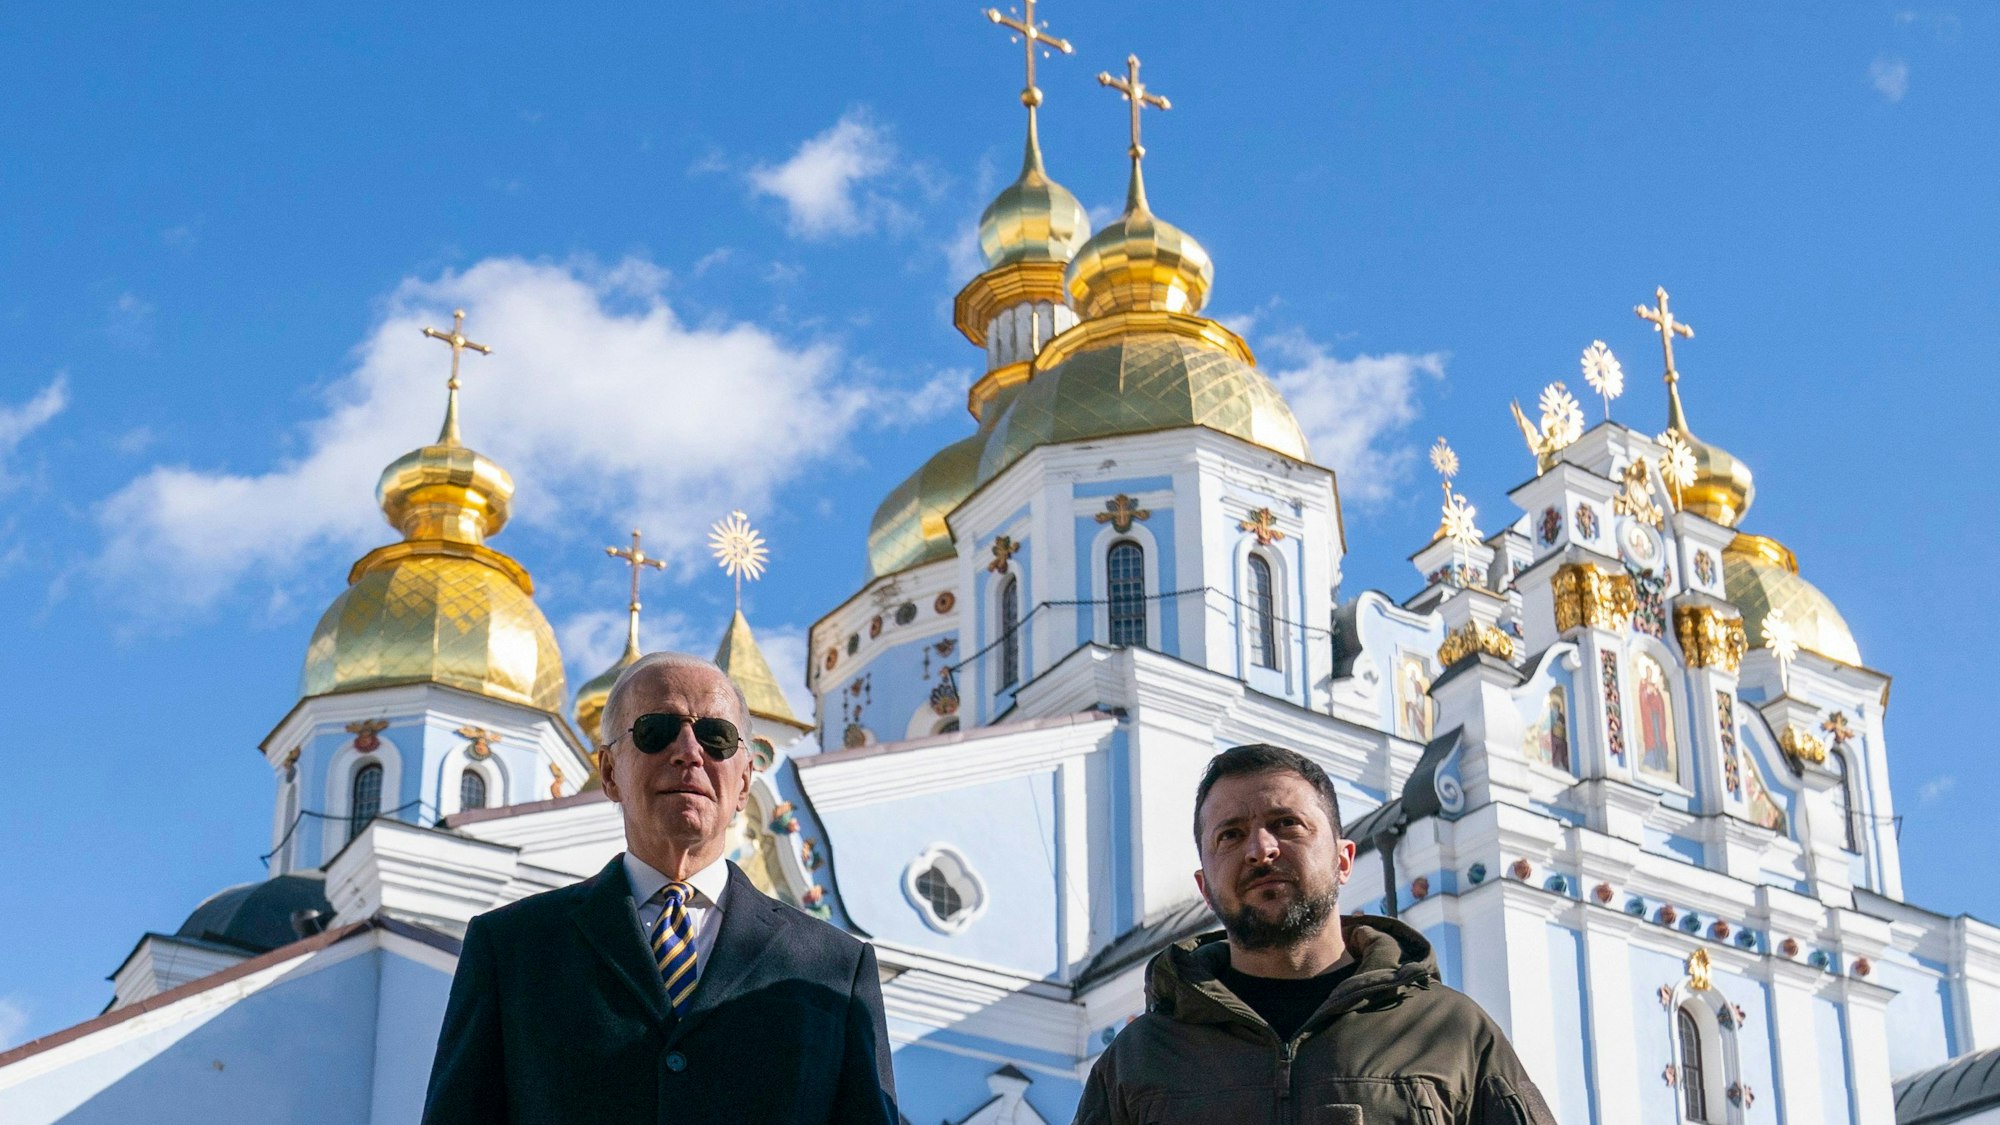 Joe Biden (l), Präsident der USA, geht neben Wolodymyr Selenskyj, Präsident der Ukraine, an der Kathedrale mit der goldenen Kuppel von St. Michael (Kiew, Ukraine). Unter strengsten Sicherheitsvorkehrungen ist US-Präsident Joe Biden am 20.02.2023 zu einem Besuch in der Ukraine eingetroffen.